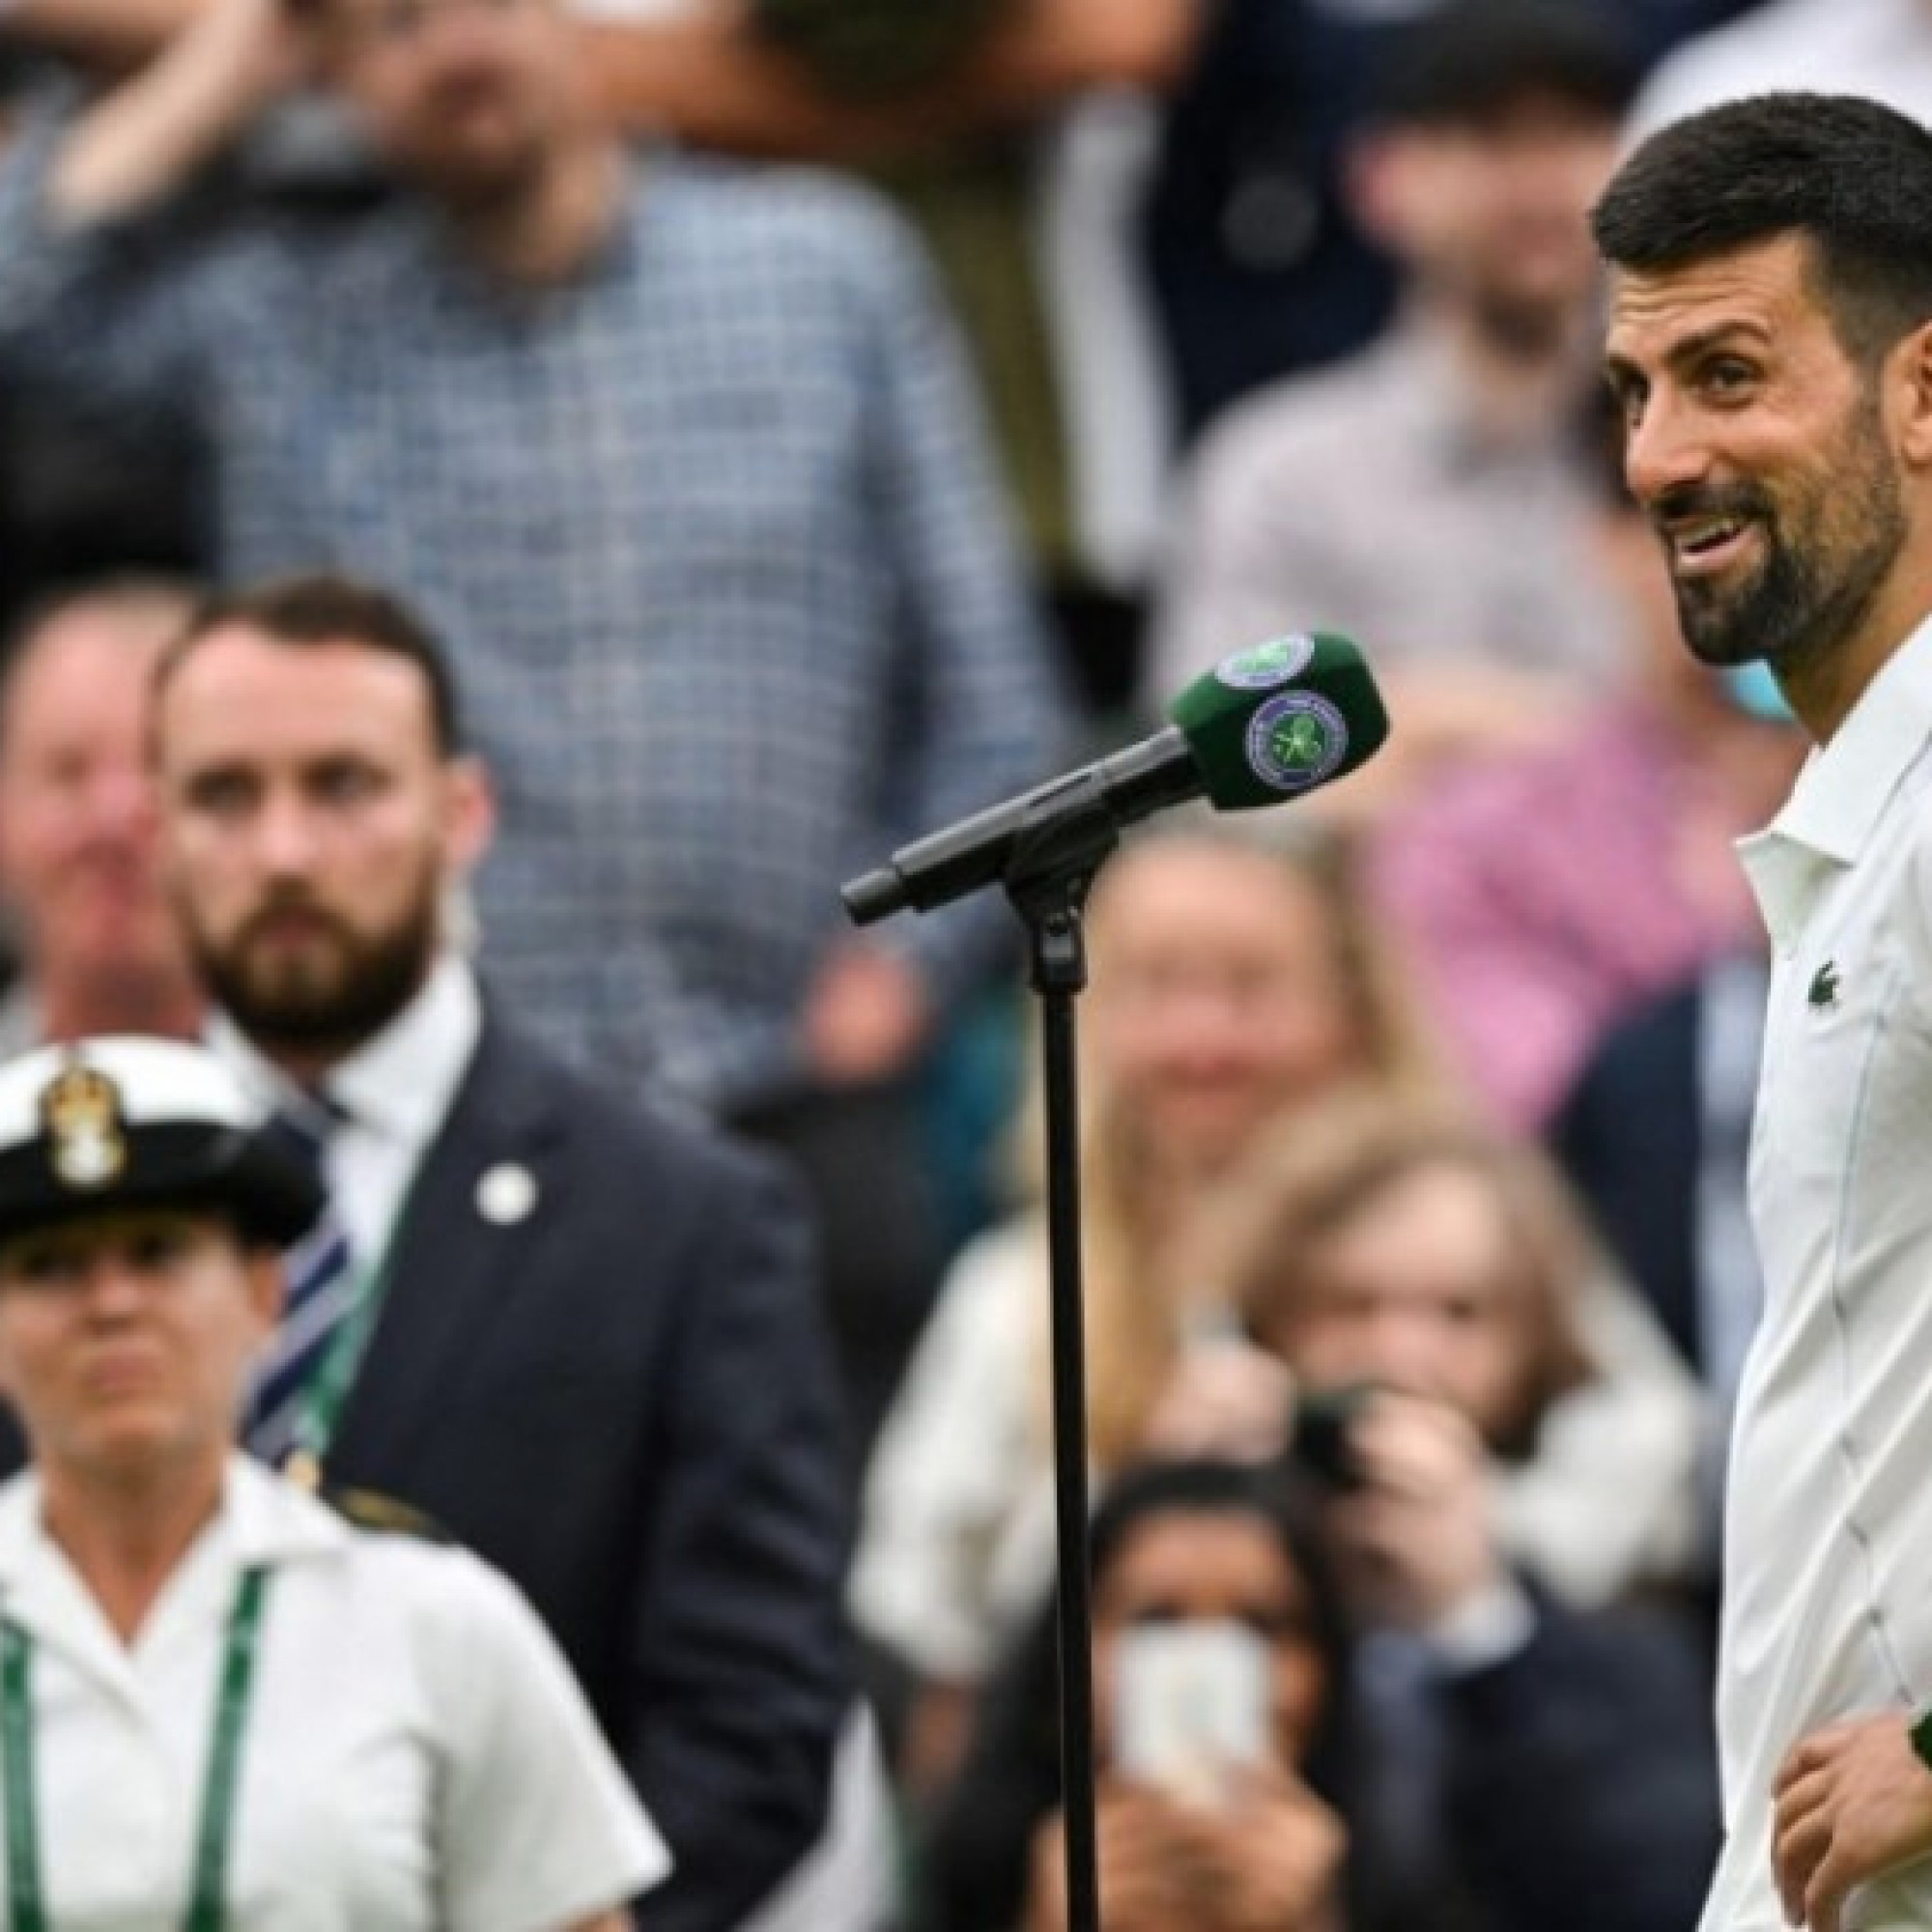  - Nóng nhất thể thao sáng 3/7: Djokovic thể hiện tình yêu với giải Wimbledon